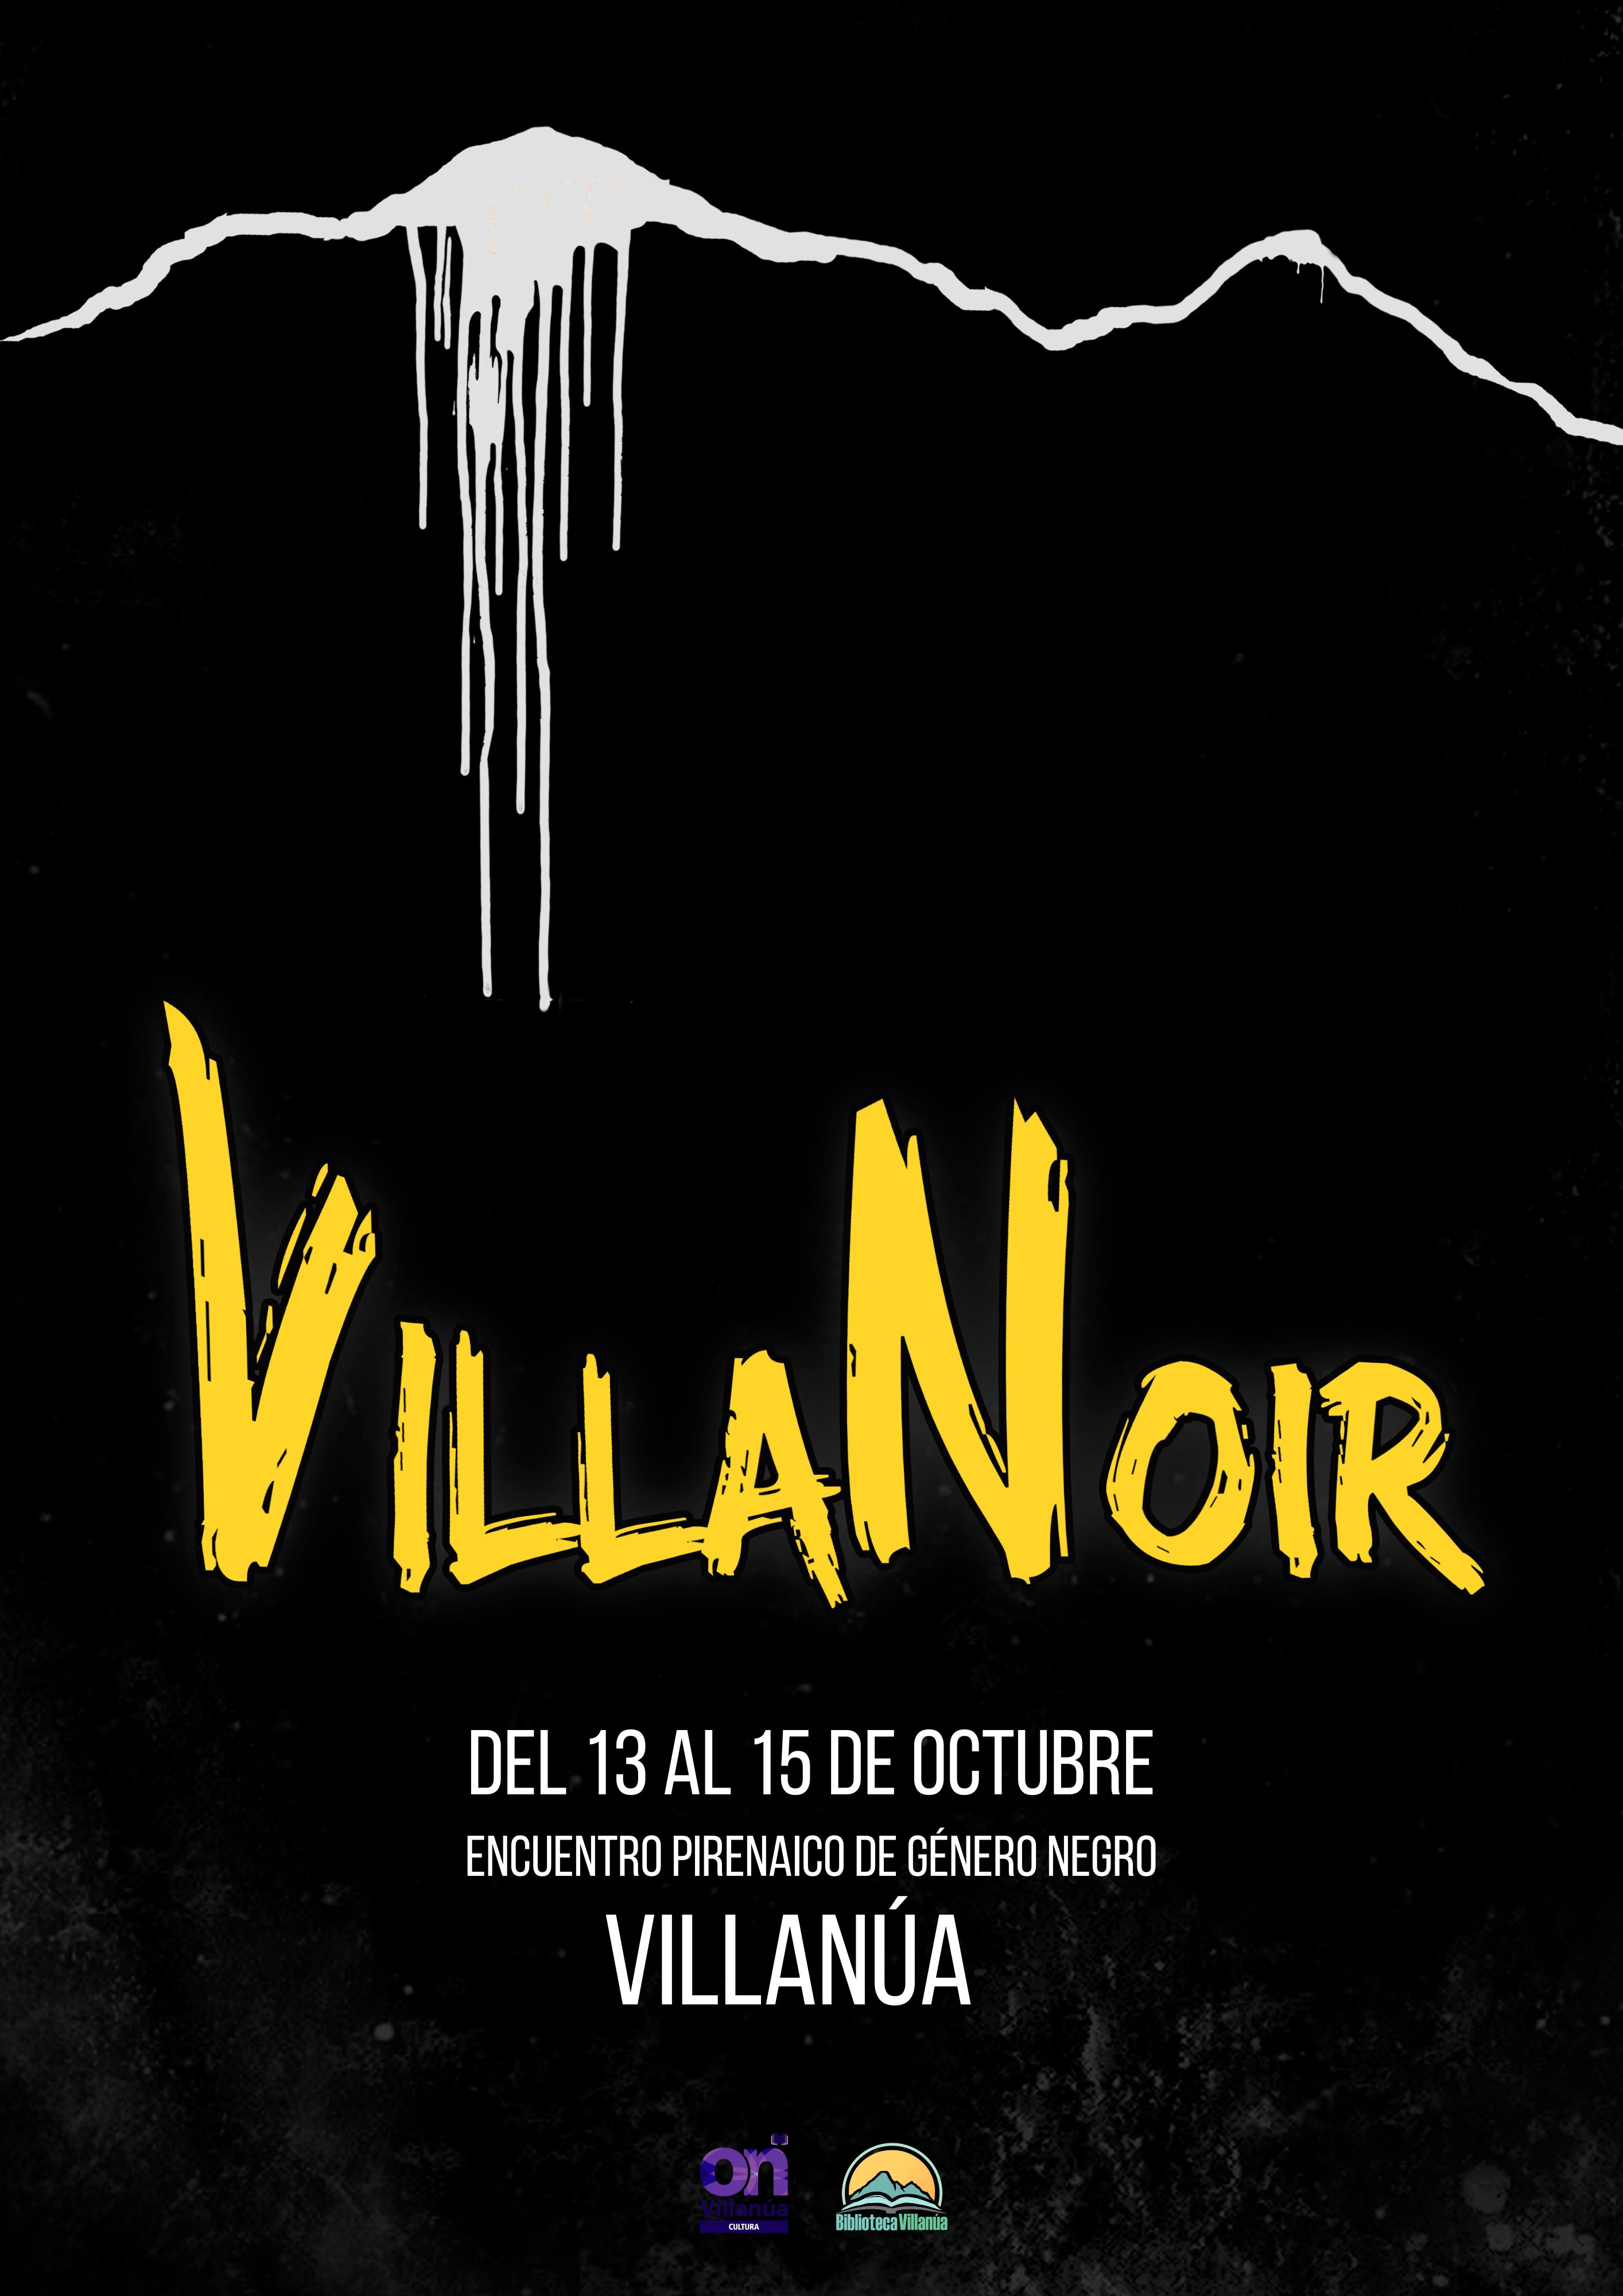 VillaNoir pone a Villana en el mapa de la novela negra espaola